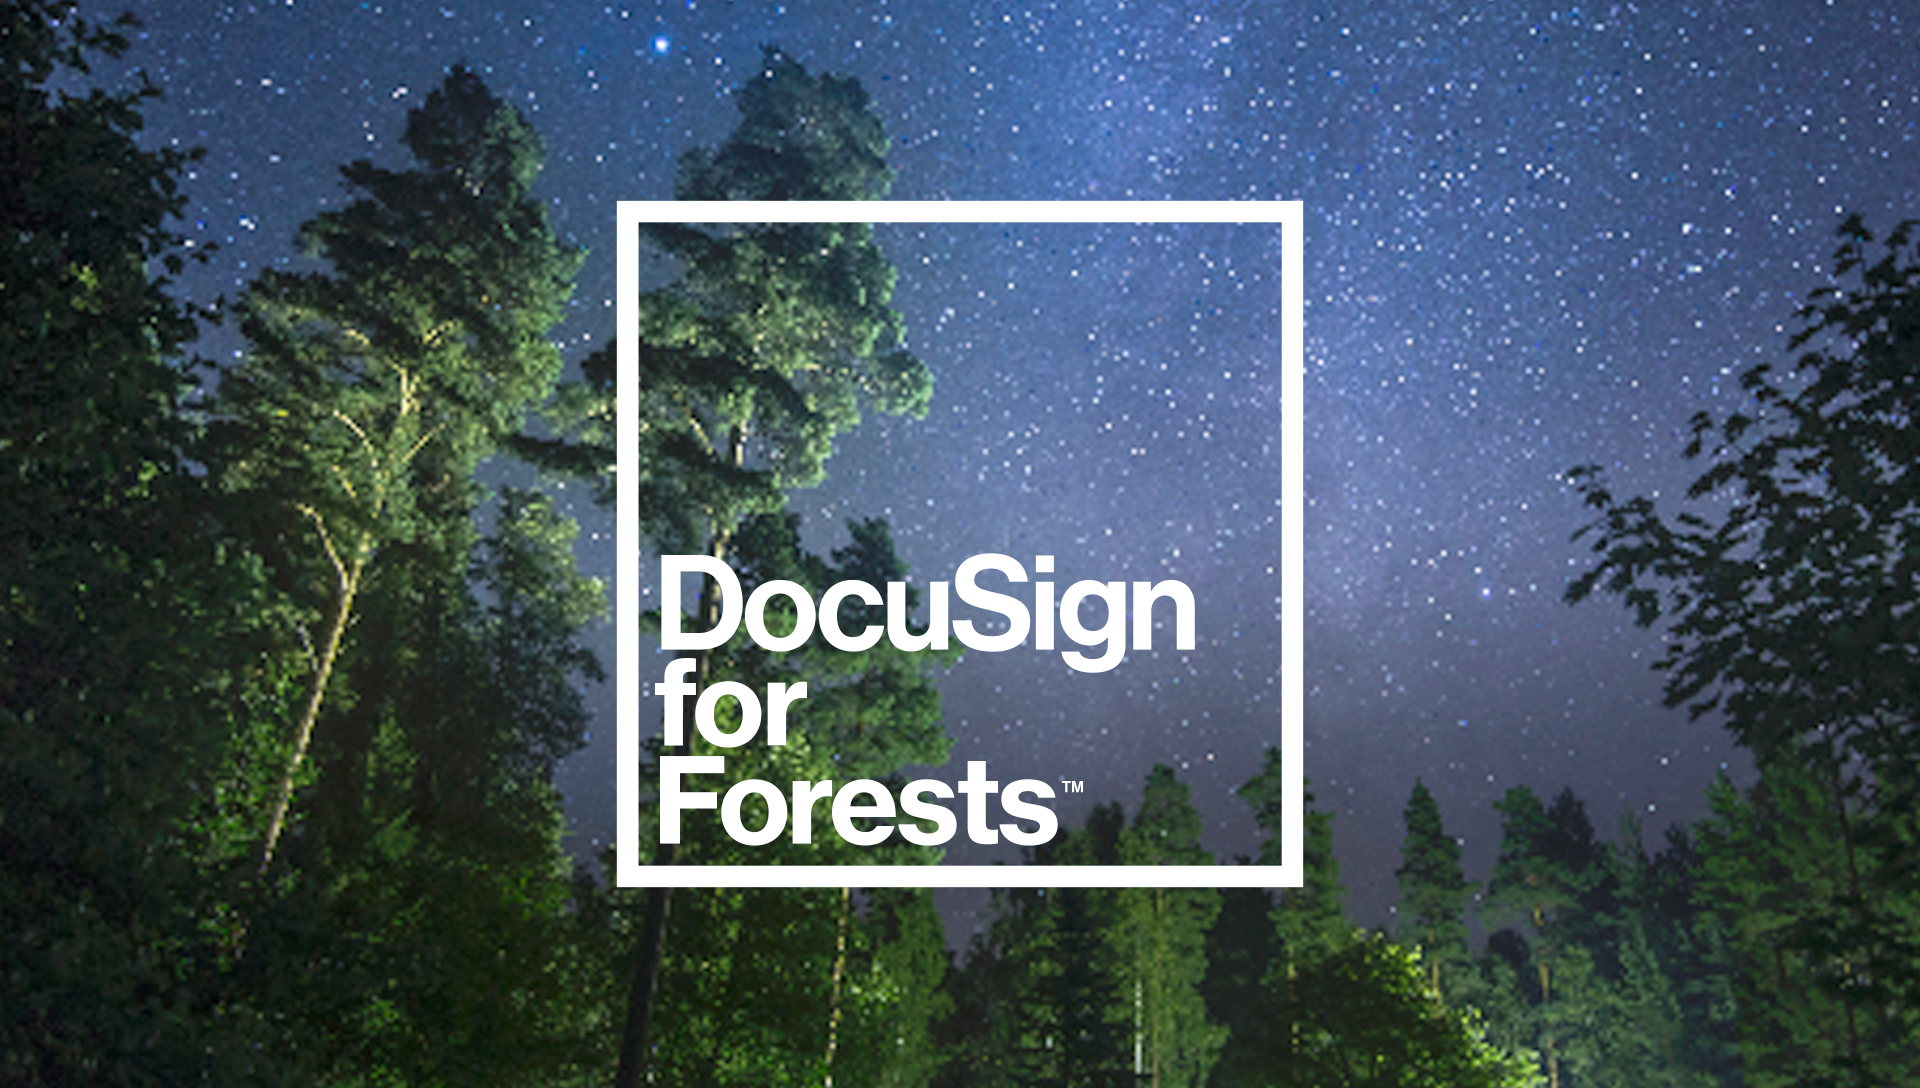 DocuSign for Forests schermafbeelding